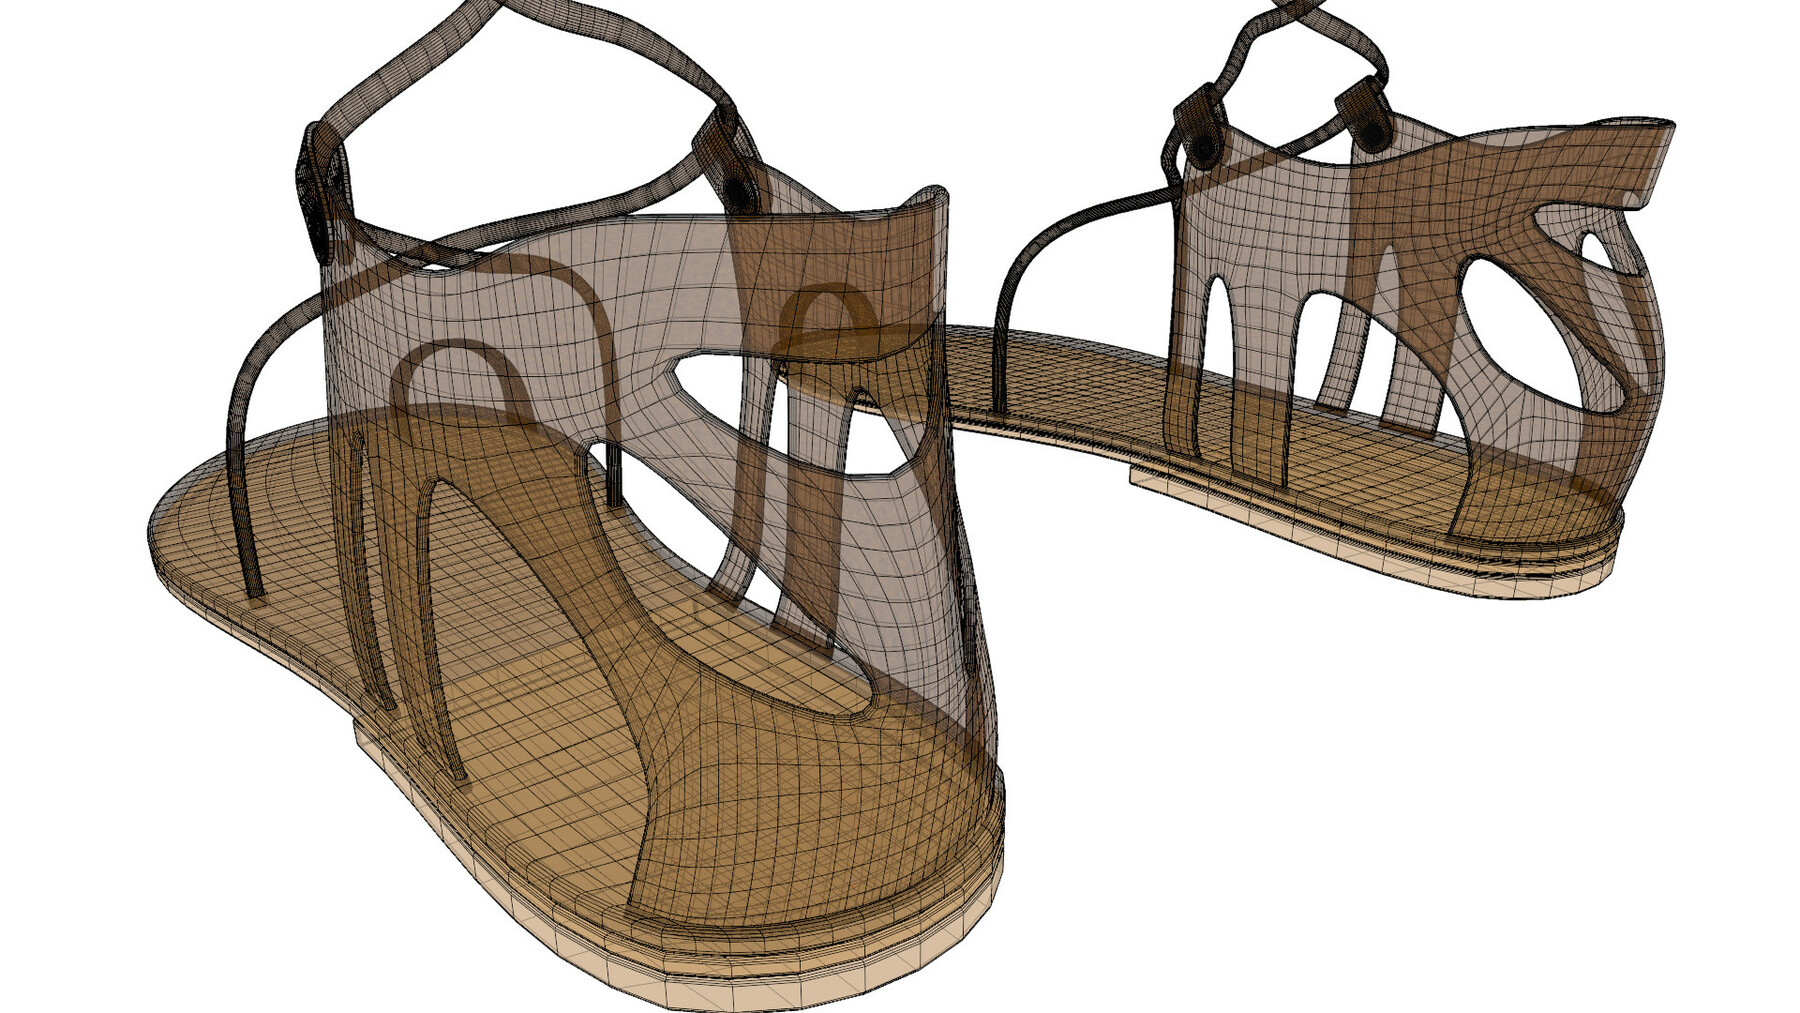 ArtStation - 3D Gladiator Sandals | Resources